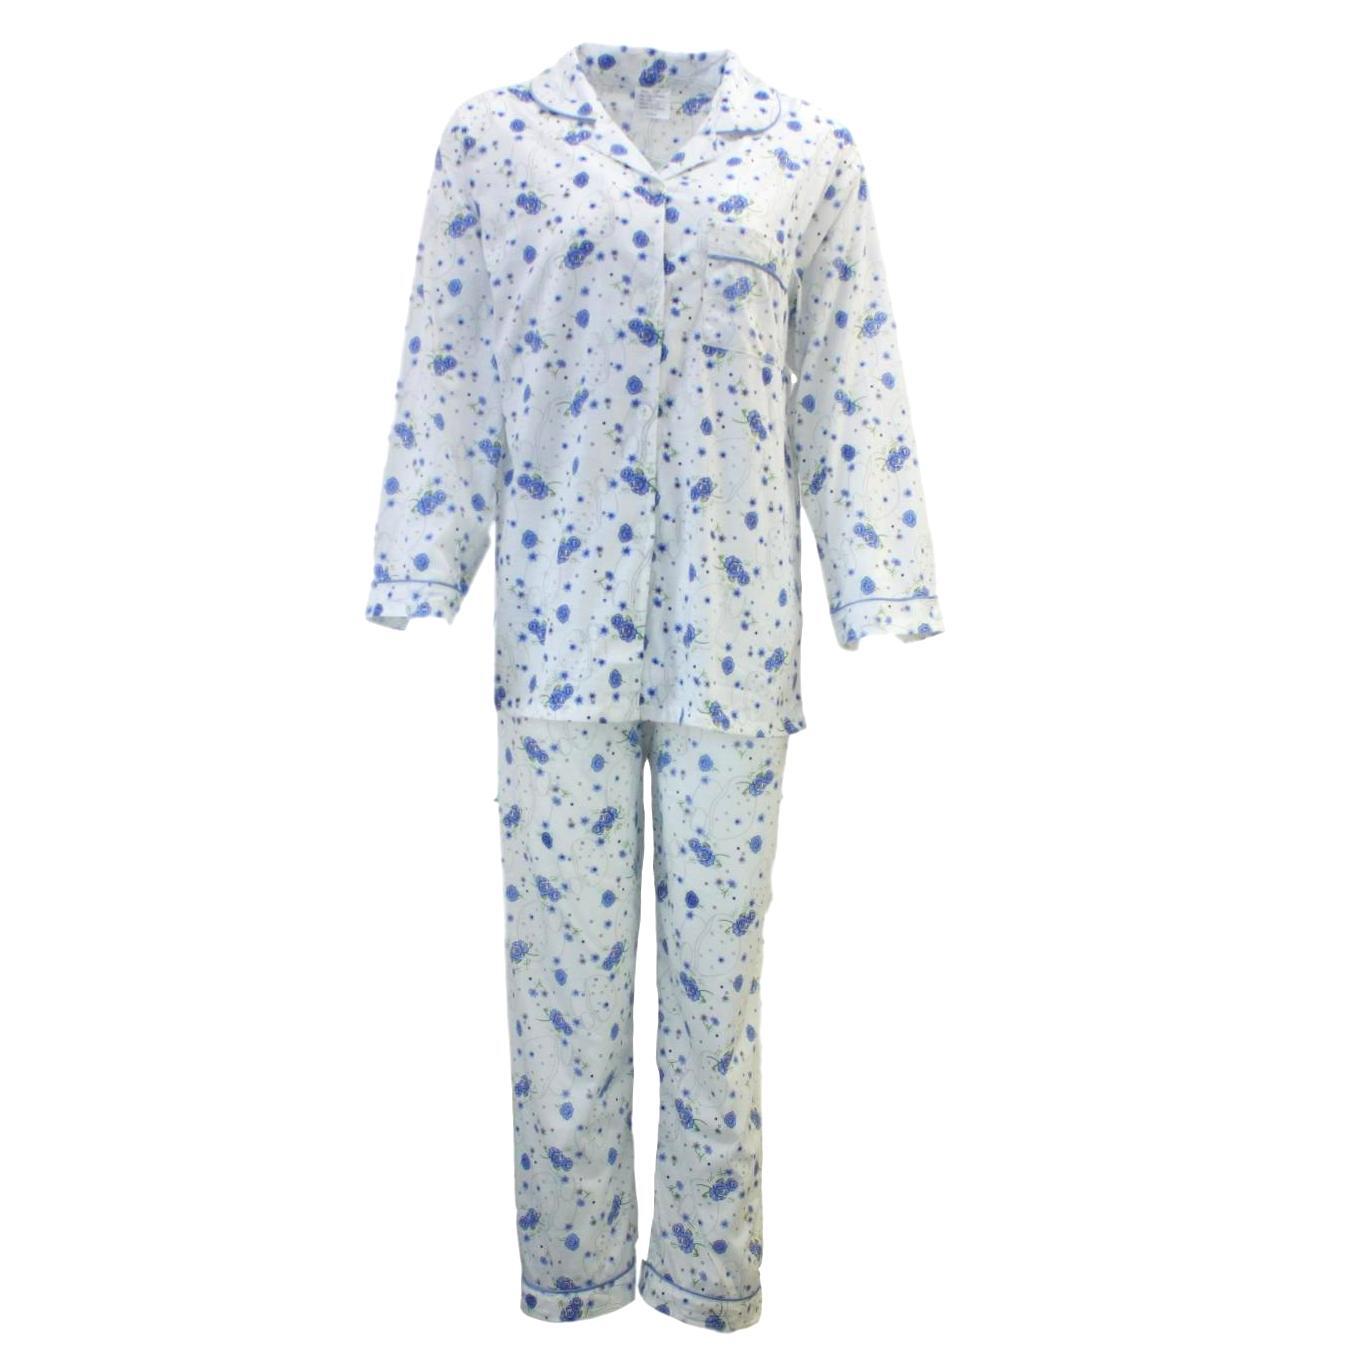 Women's Ladies Longsleeve Cotton Pajamas Pyjamas PJ Set Sleepwear